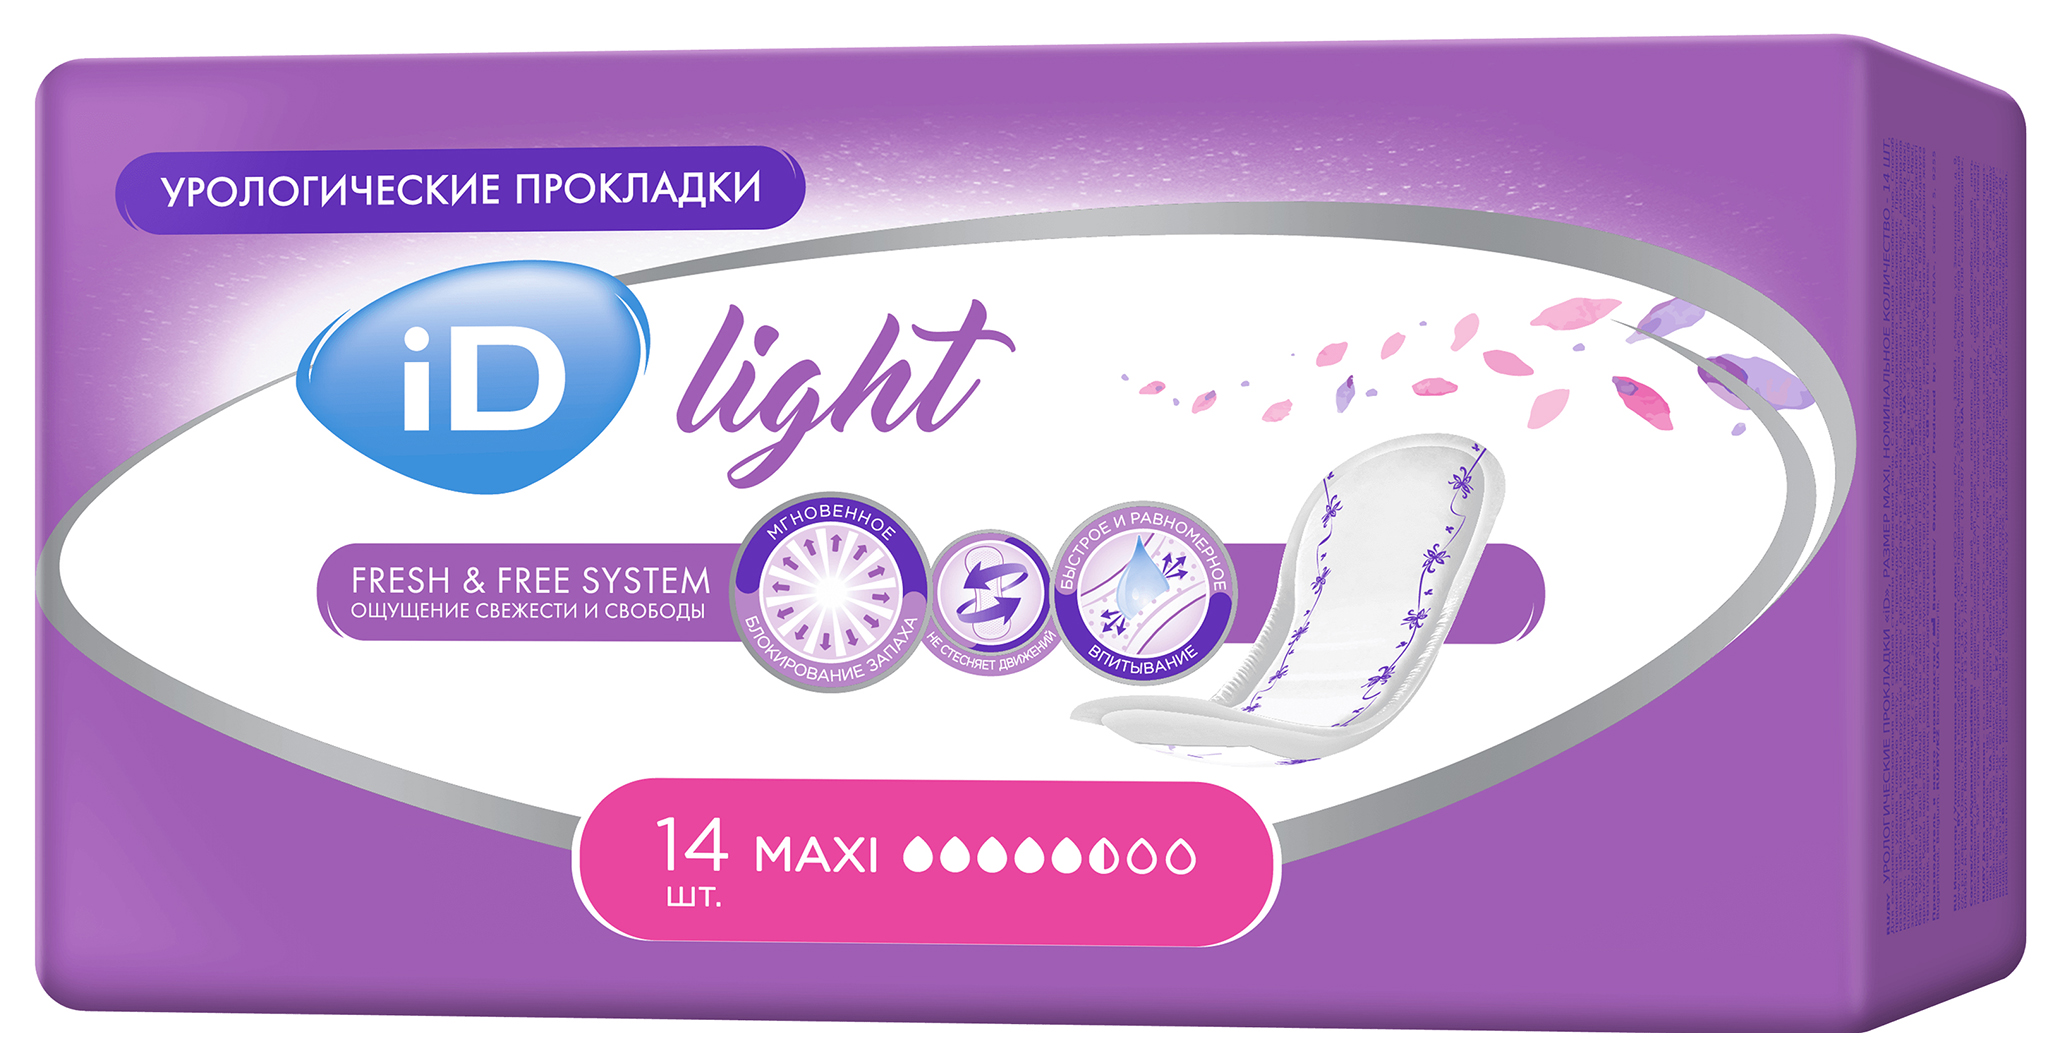 Урологические прокладки для женщин, 14 шт. iD Light Maxi